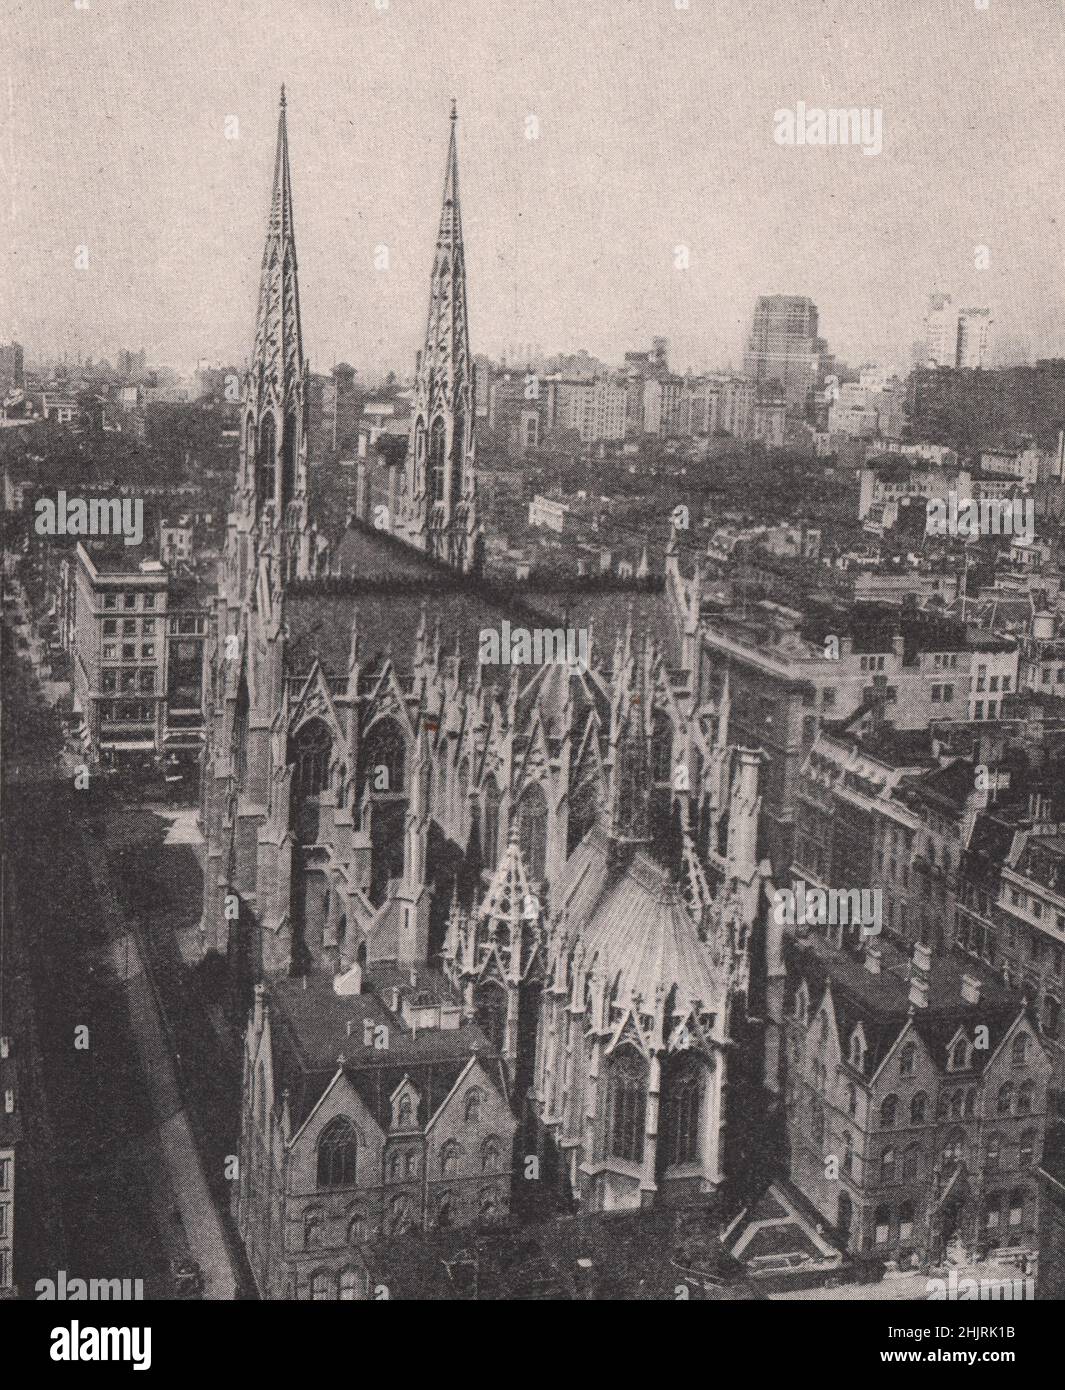 Majestueuses flèches gothiques au-dessus de la cathédrale Saint-Patrick. New York (1923) Banque D'Images